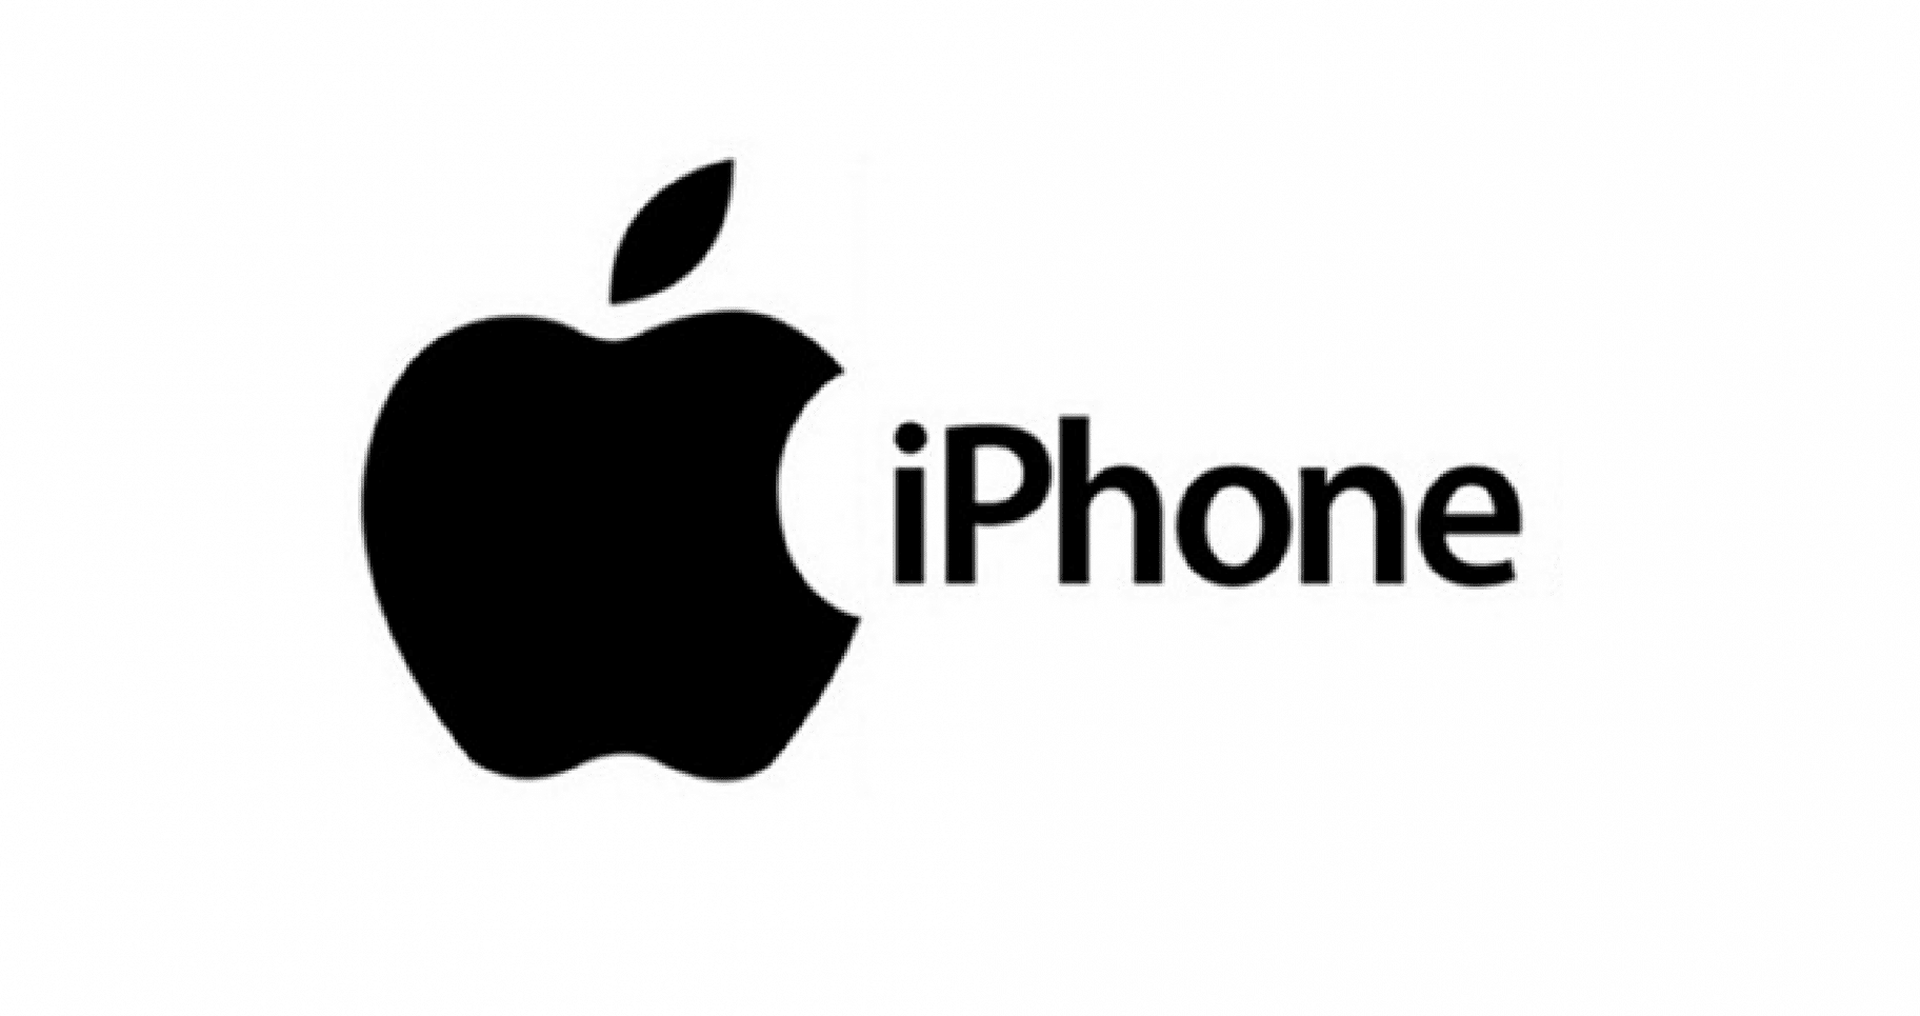 Iphone. Эмблема Apple. Логотип Эппл. Логотип айфона яблоко.